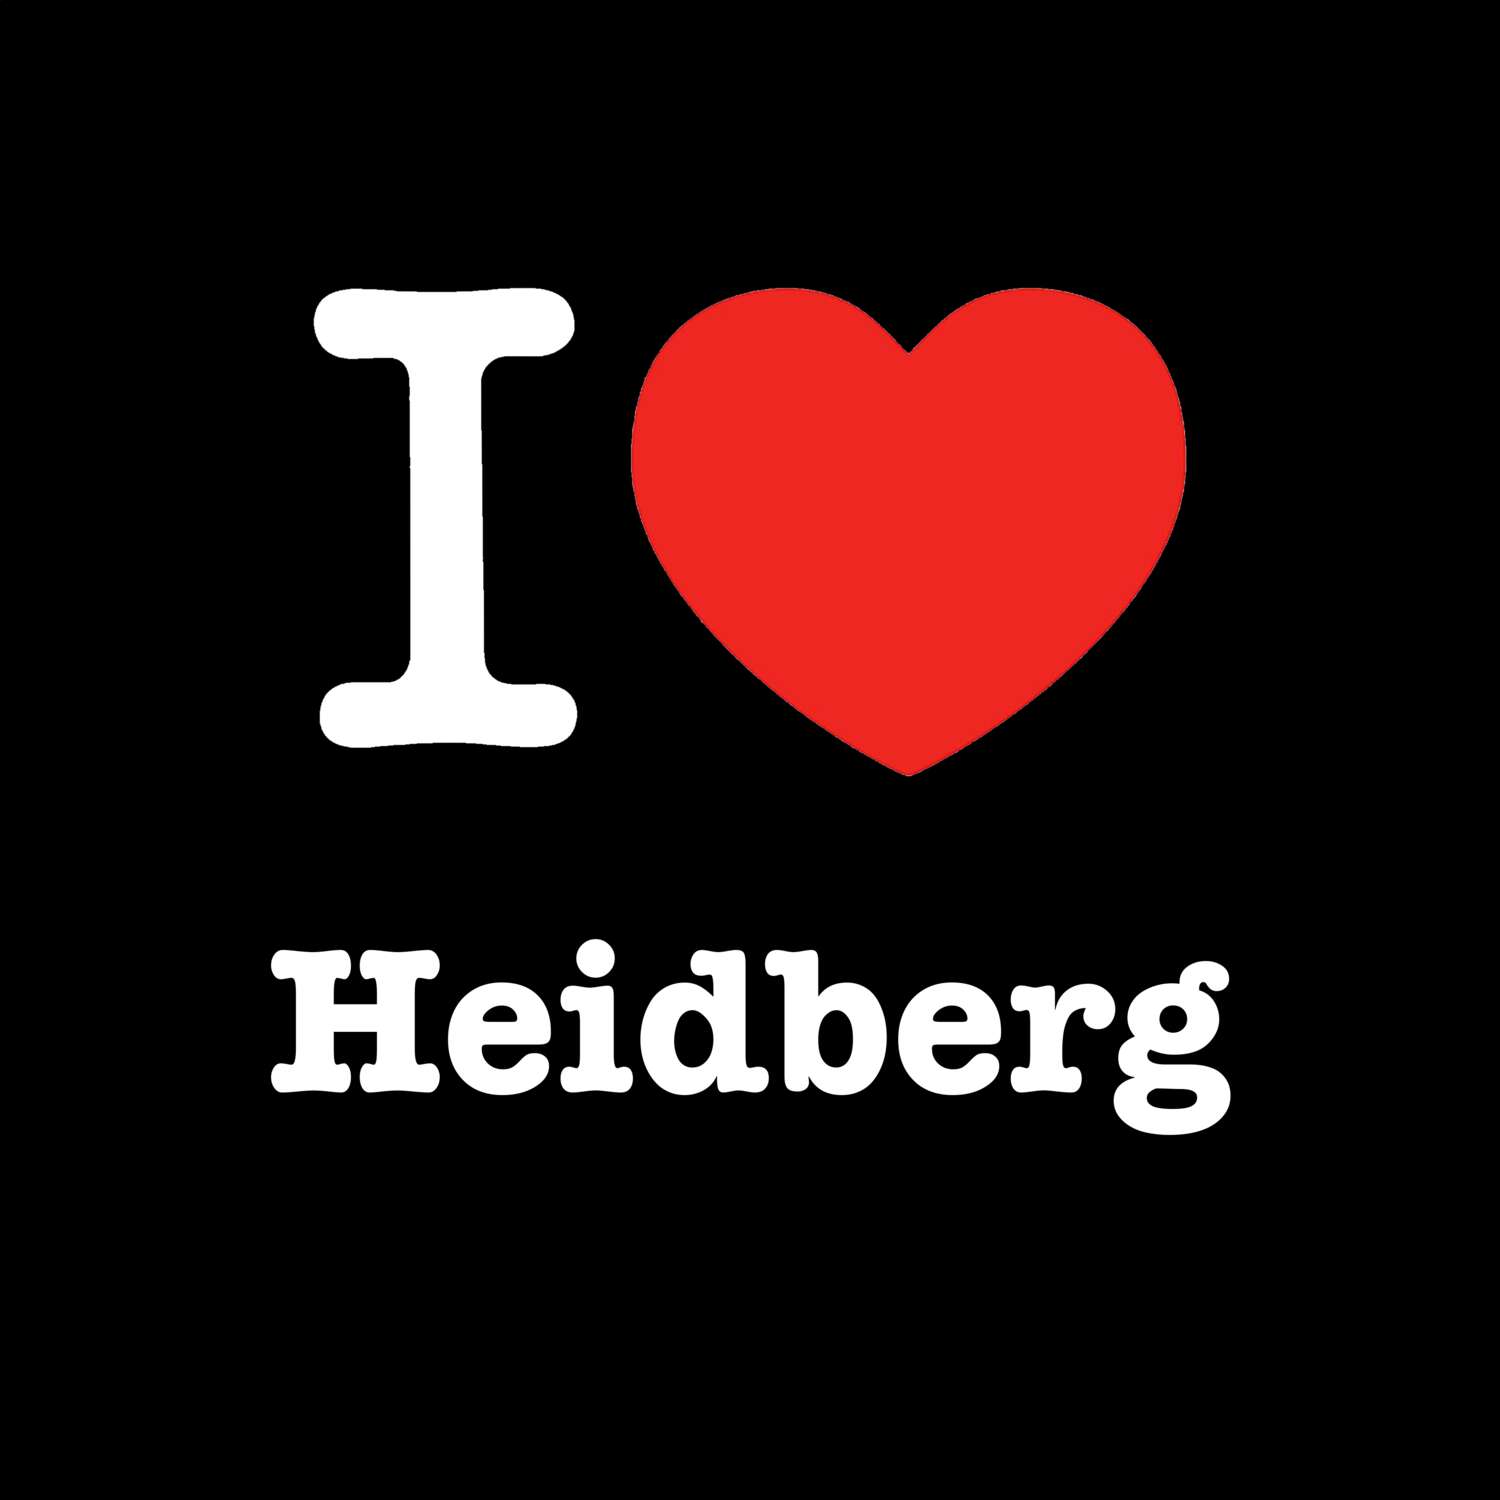 Heidberg T-Shirt »I love«